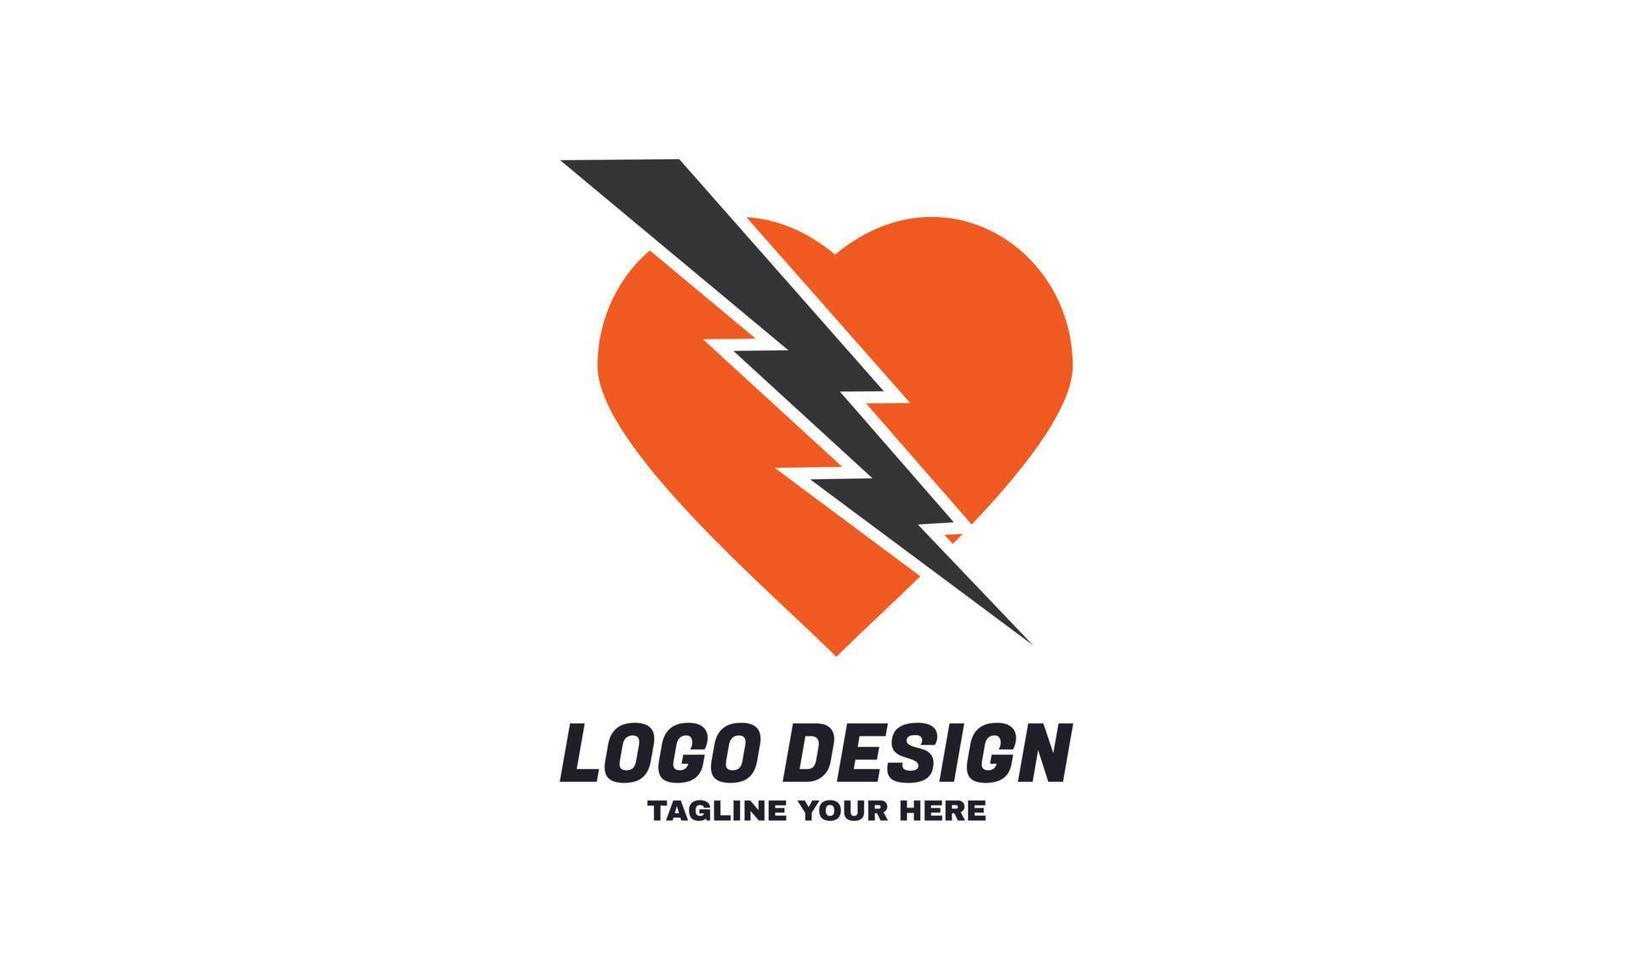 plantilla de diseño de logotipo de amor y flash corporativo de negocio de vector de stock